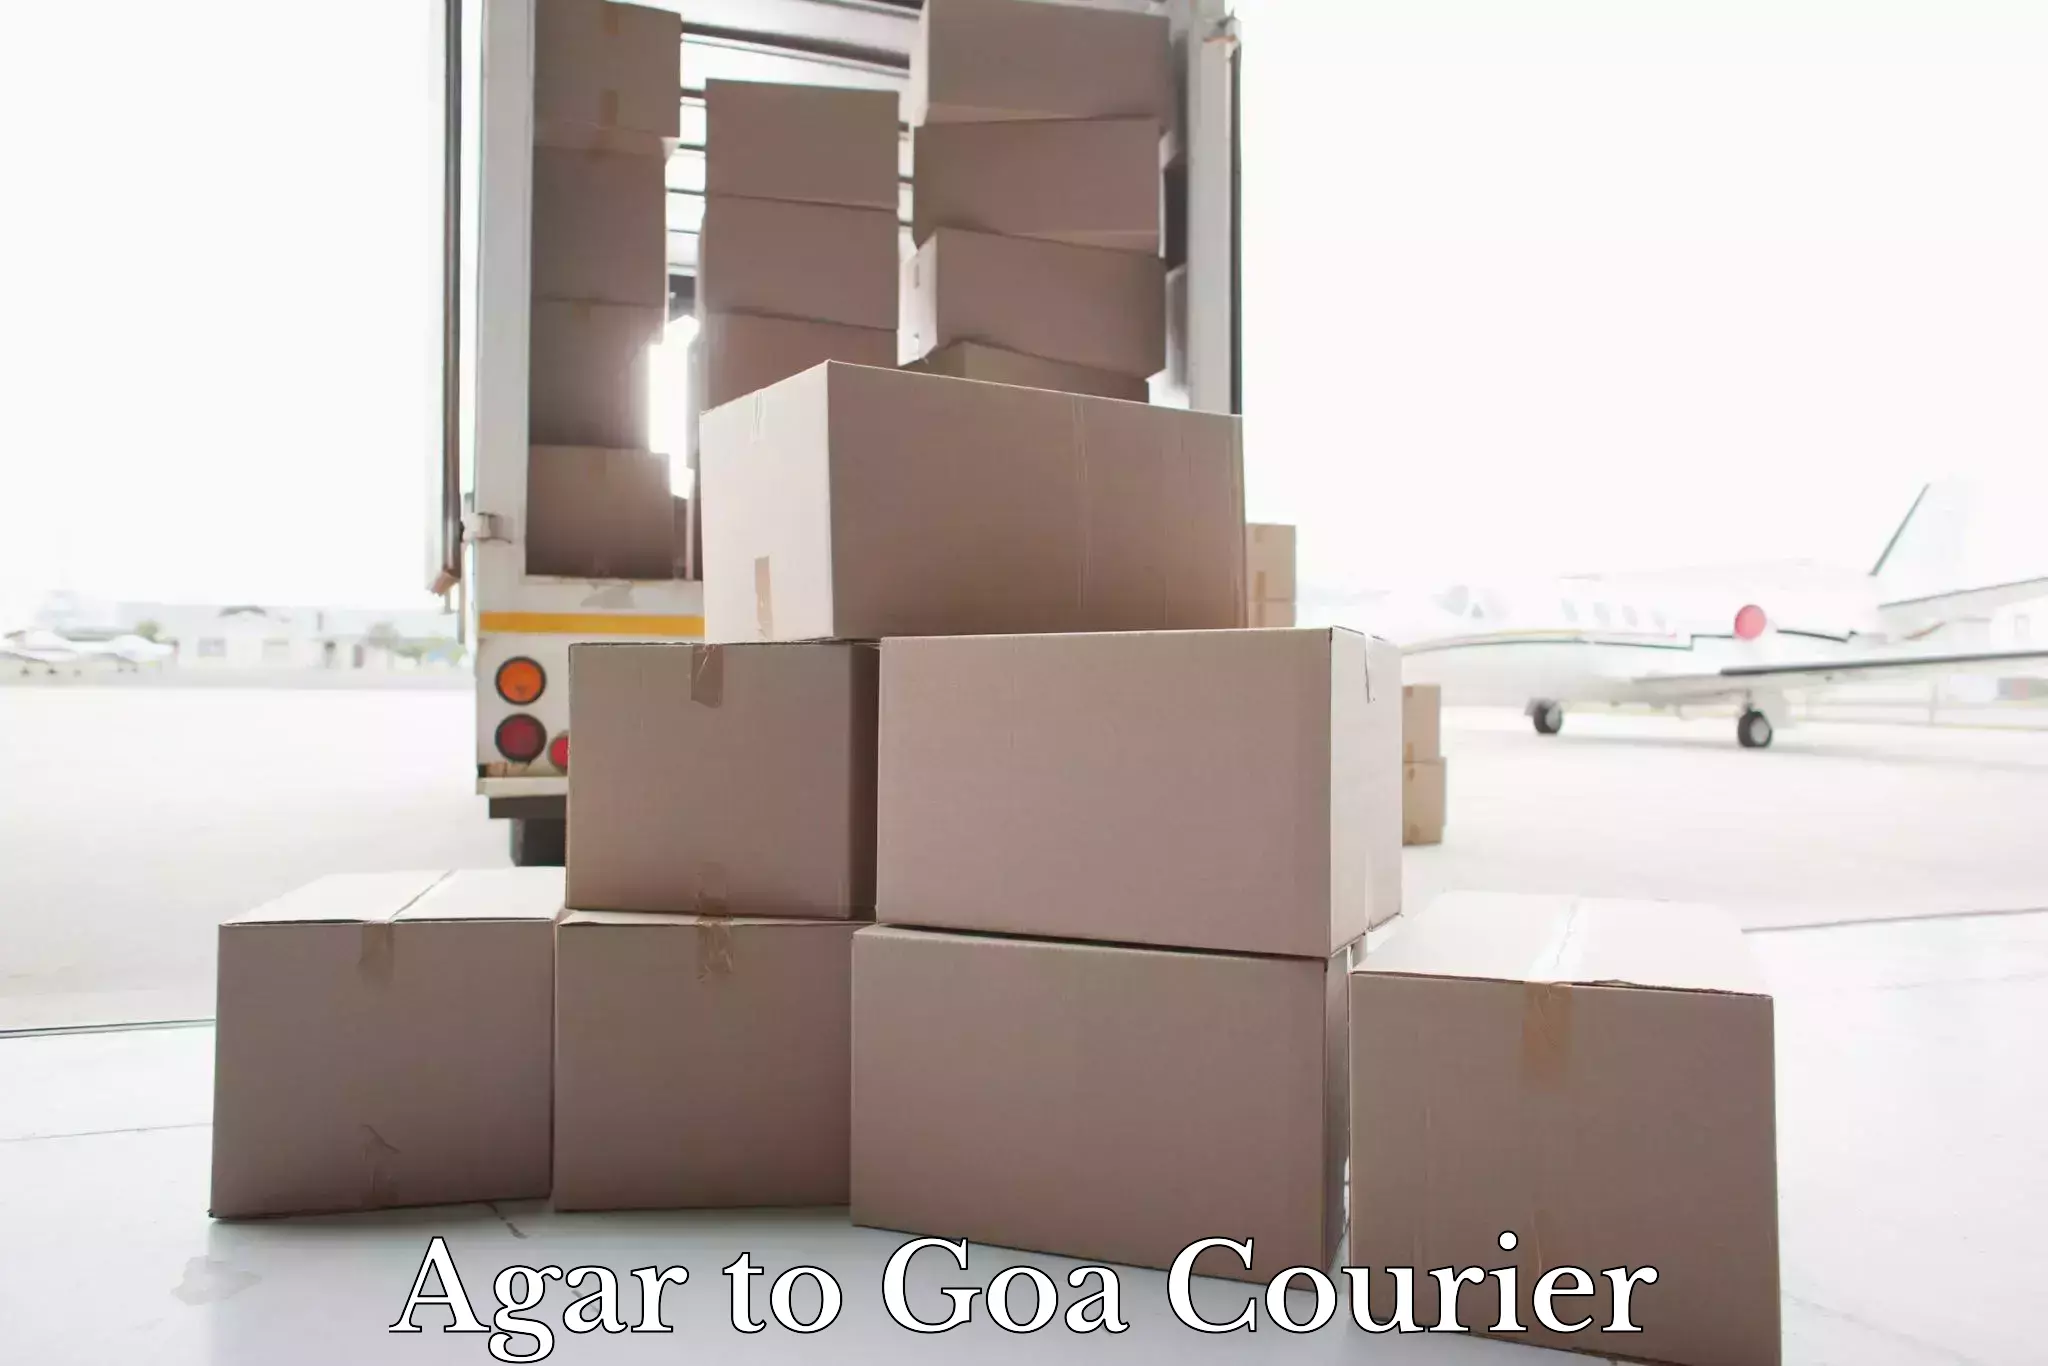 Doorstep luggage collection Agar to Goa